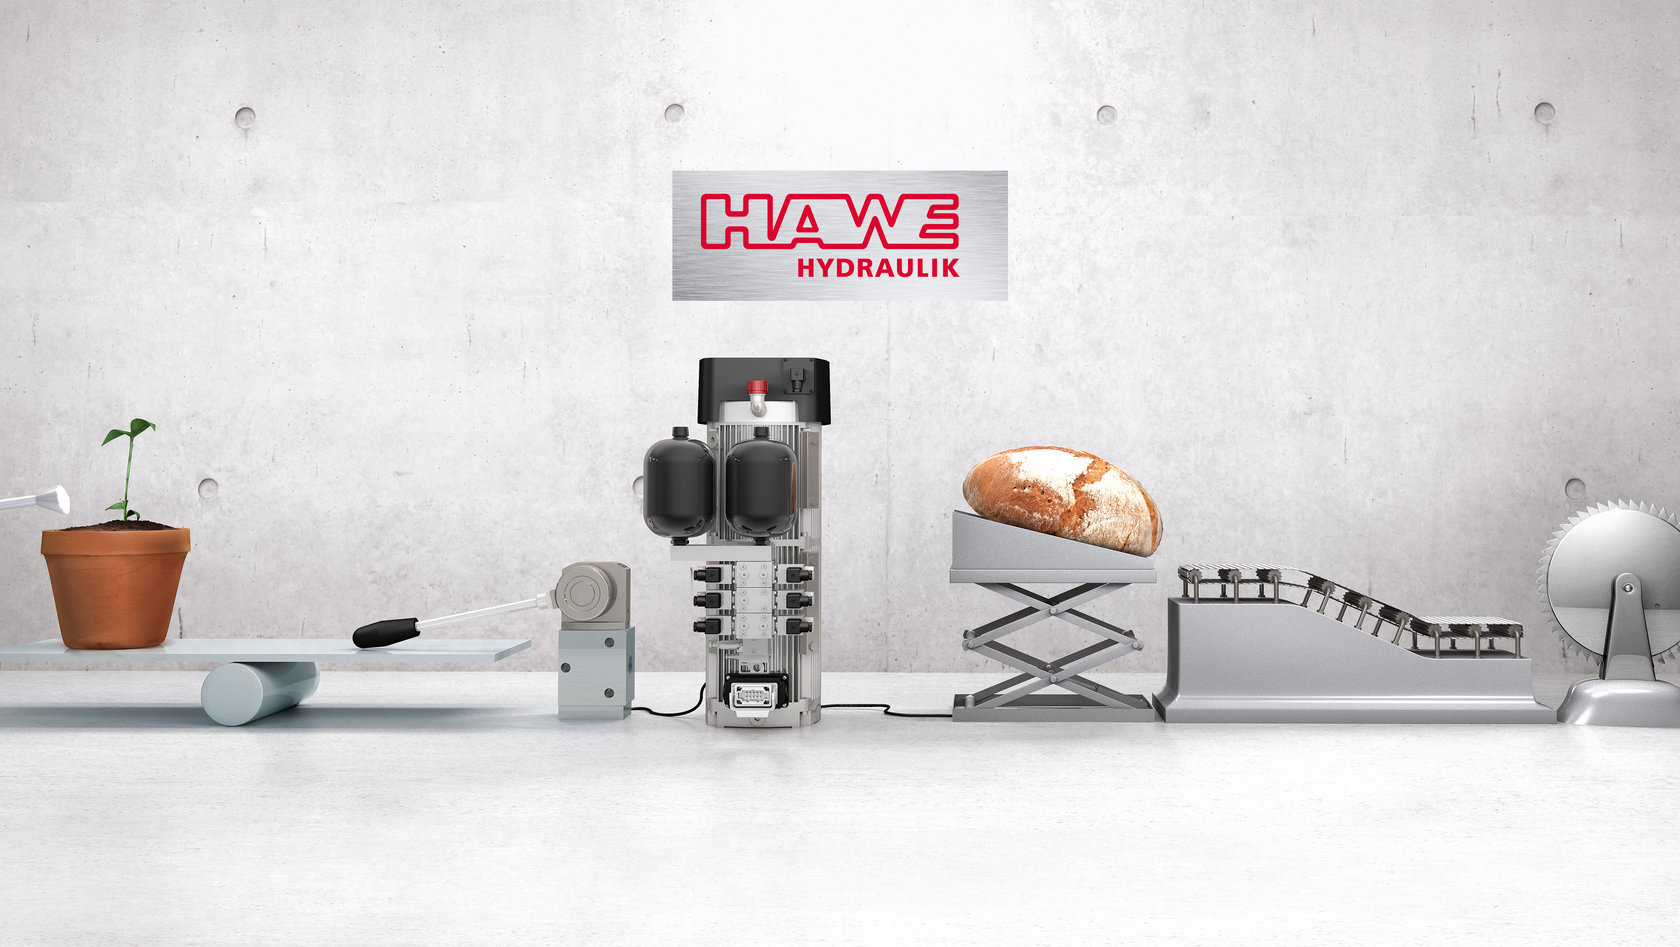 HAWE: 2 Goldbergmaschinen mit Kaffeepflanze und -maschine, Brot und Schneideblatt